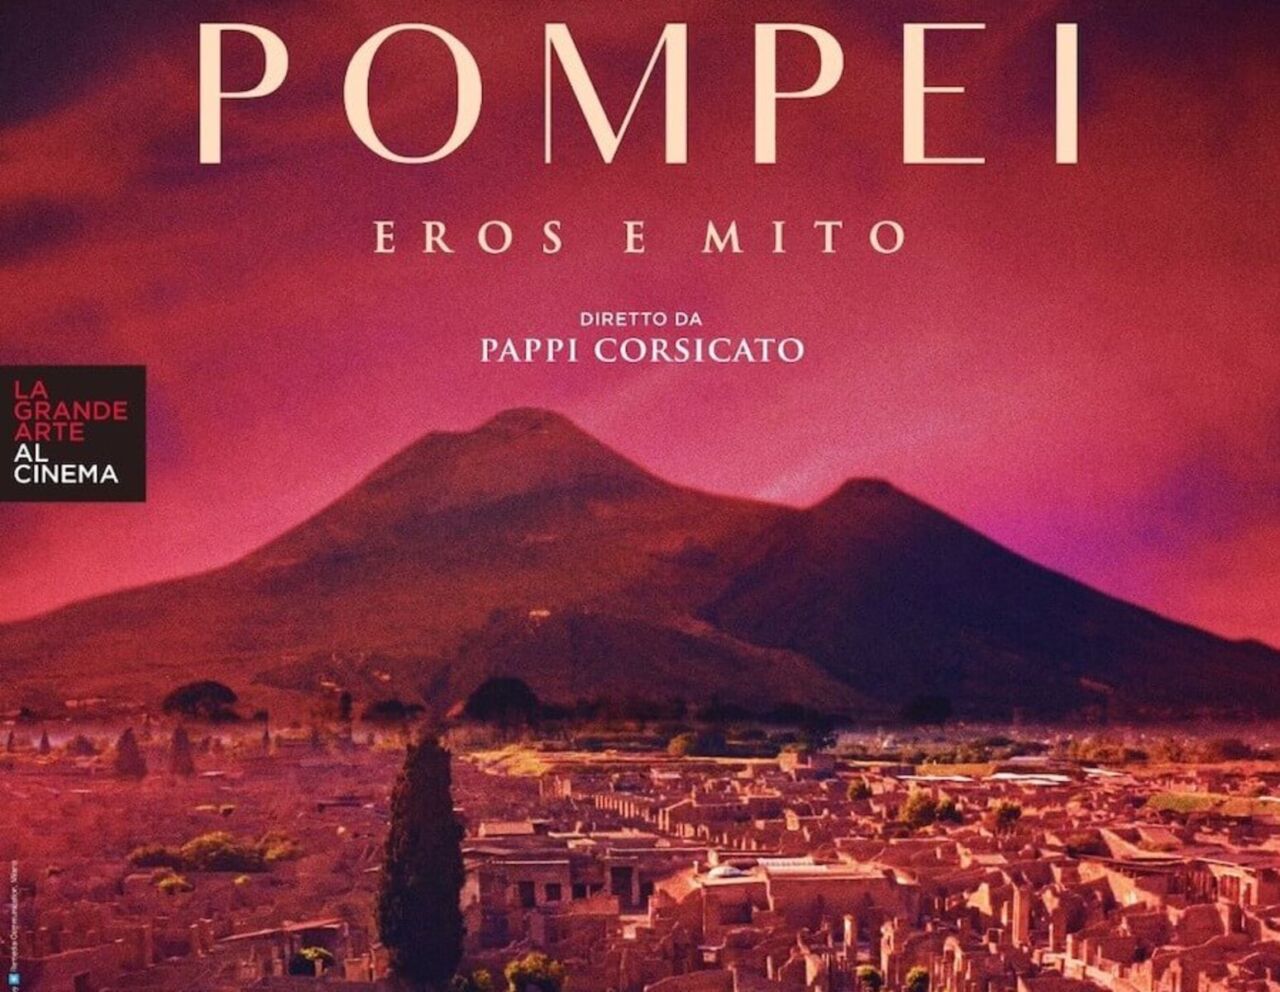 Pompei Eros e mito